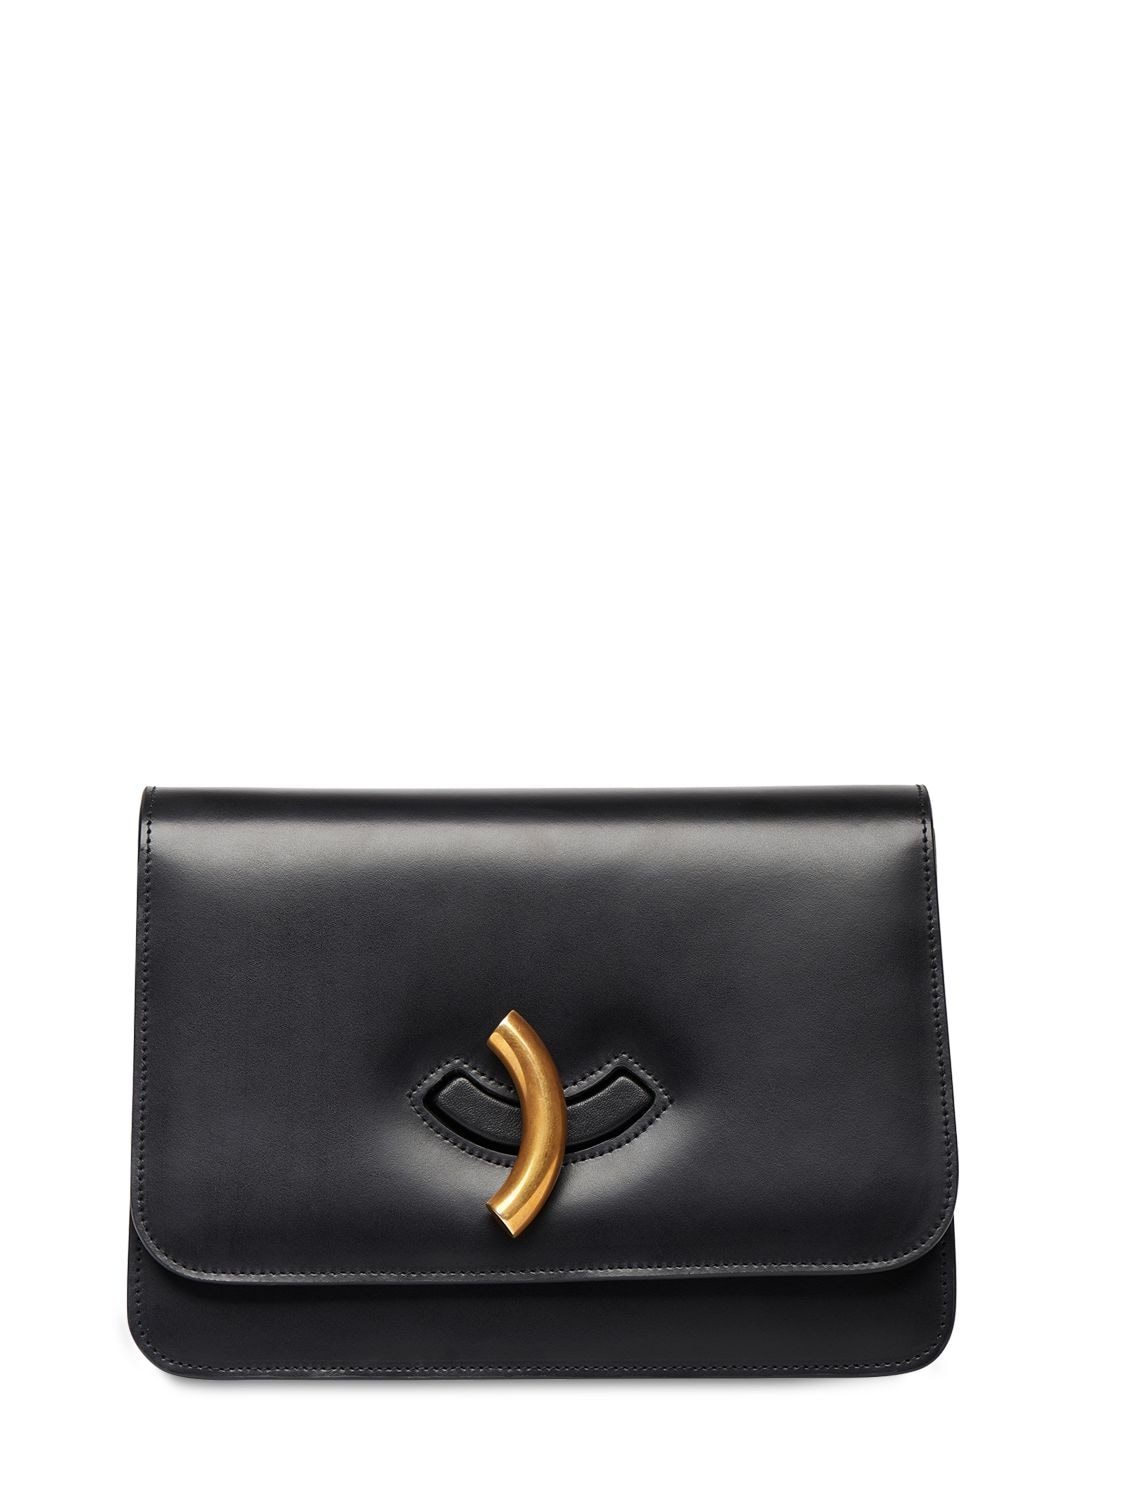 Little Liffner Maccheroni Leather Shoulder Bag In Black